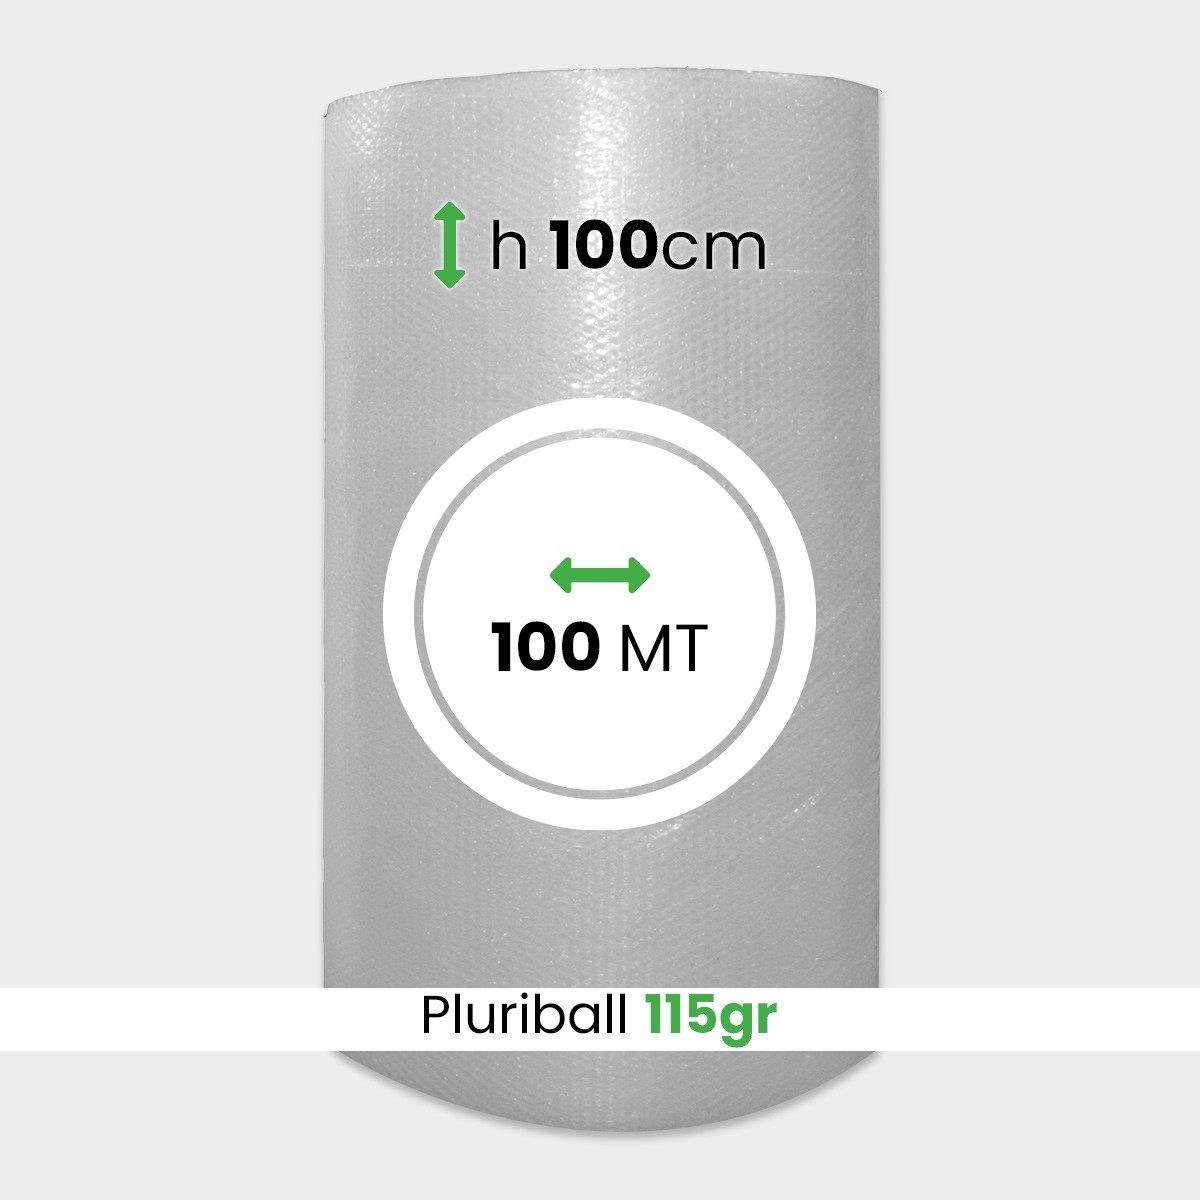 Pluriball pesante altezza 100 cm lunghezza 100 metri